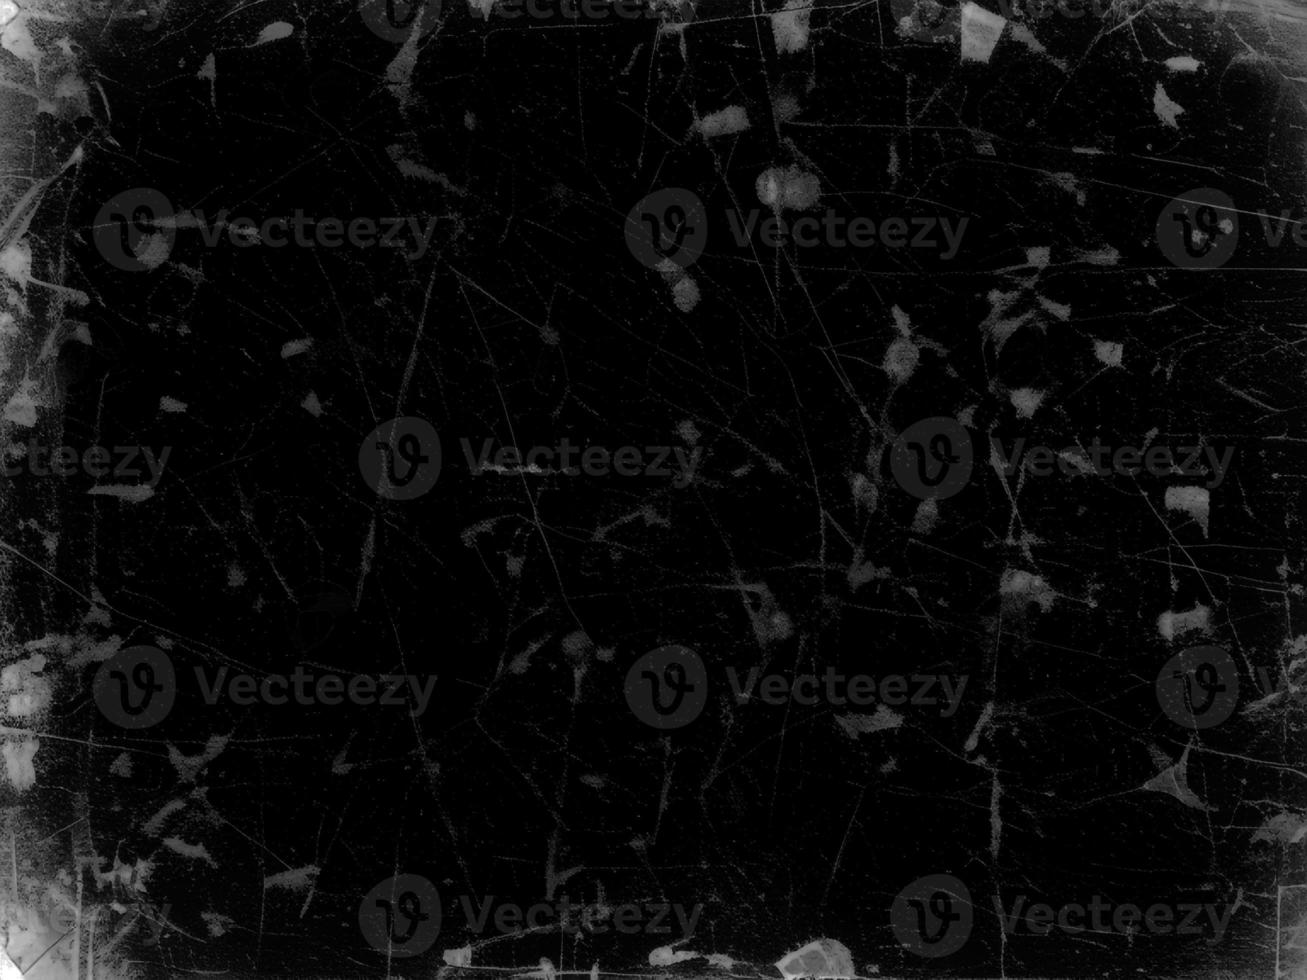 bedrövad svart repig textur med gammal filma effekt - grunge svartvit bakgrund för design och konst - årgång åldrig bakgrund foto